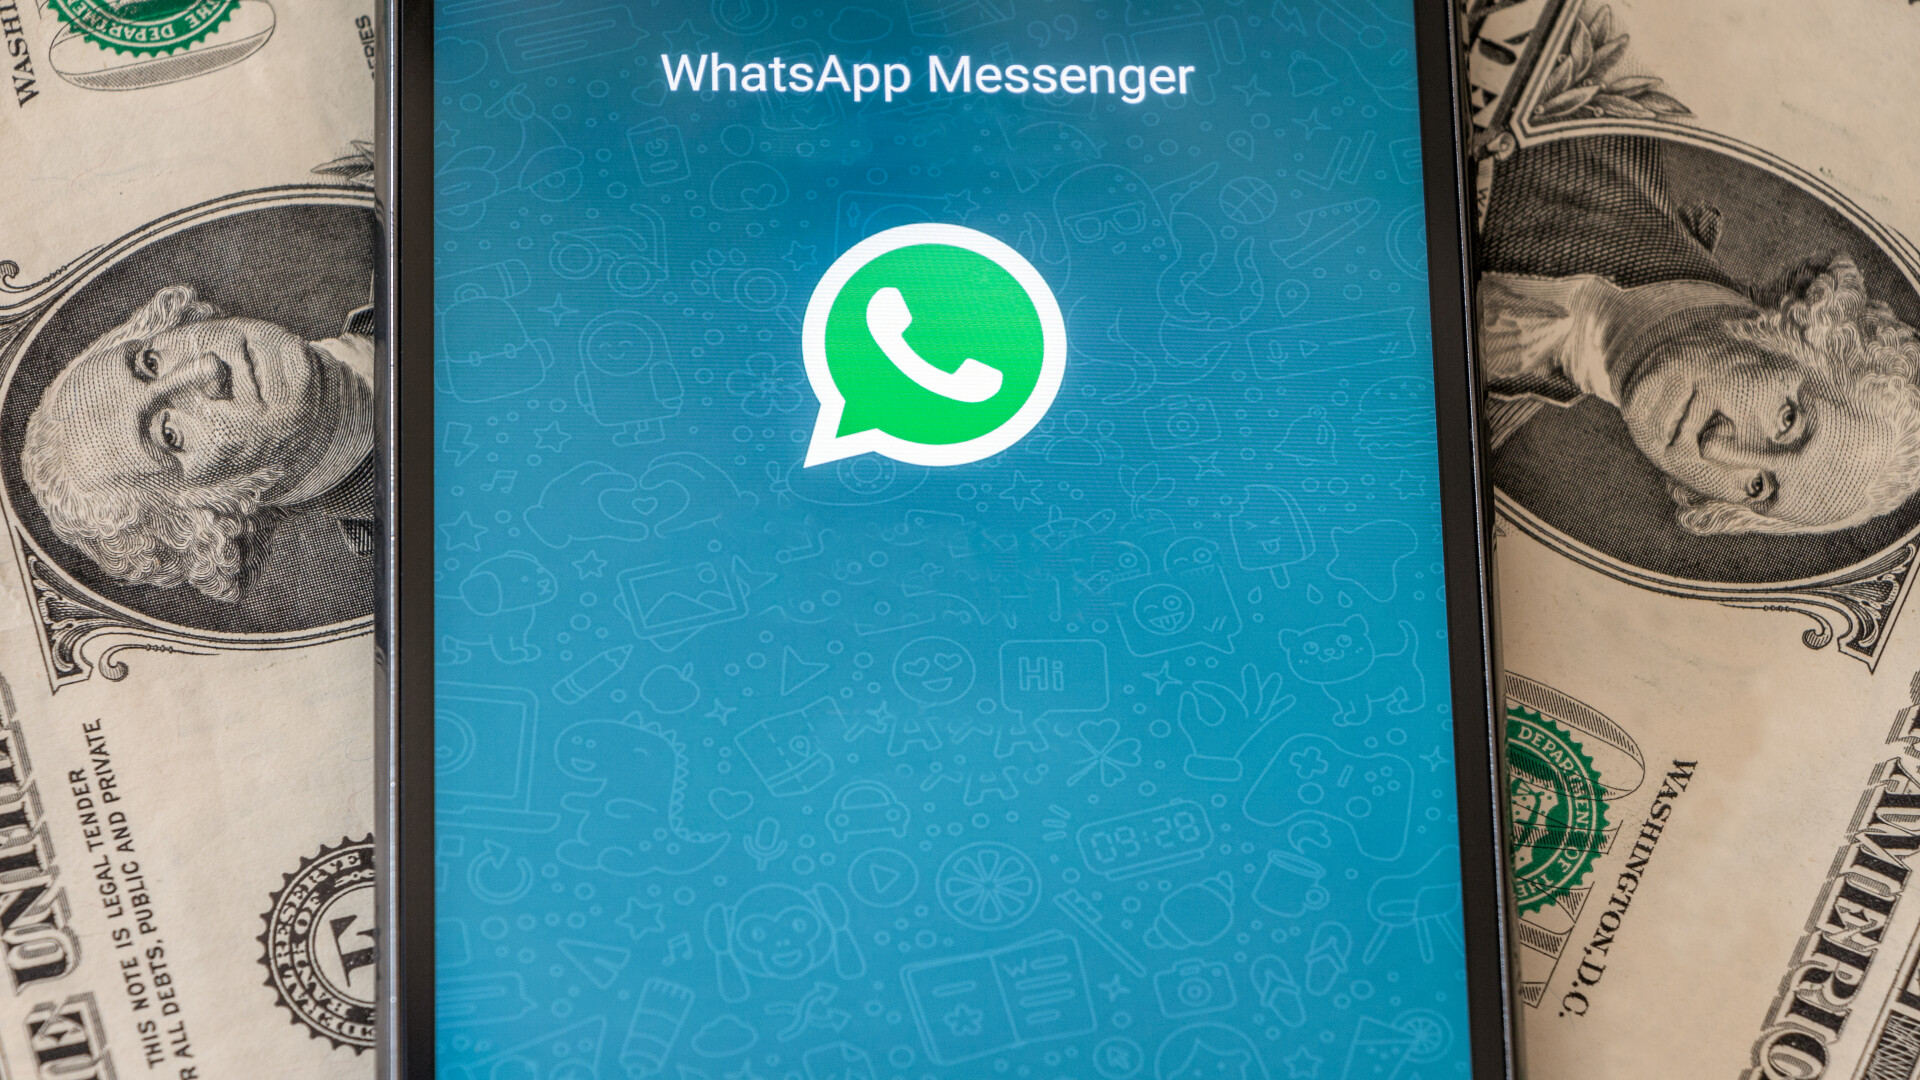 WhatasApp a primit cea mai mare amendă din istoria companiei. 225 de milioane E pentru încălcarea legii protecției datelor